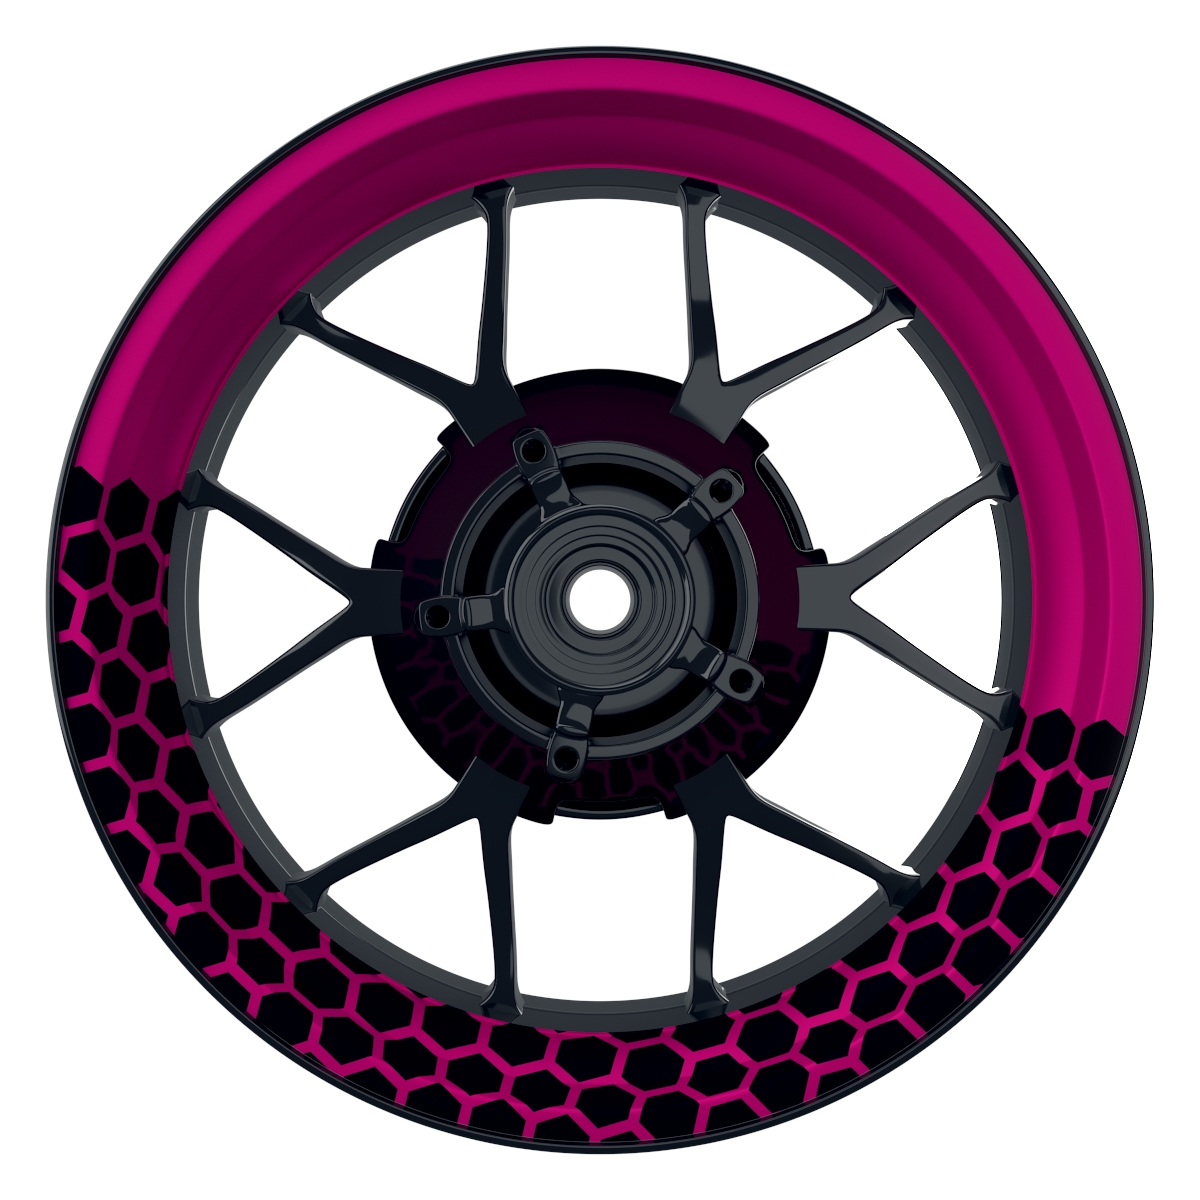 Hexagon halb halb schwarz pink Wheelsticker Felgenaufkleber